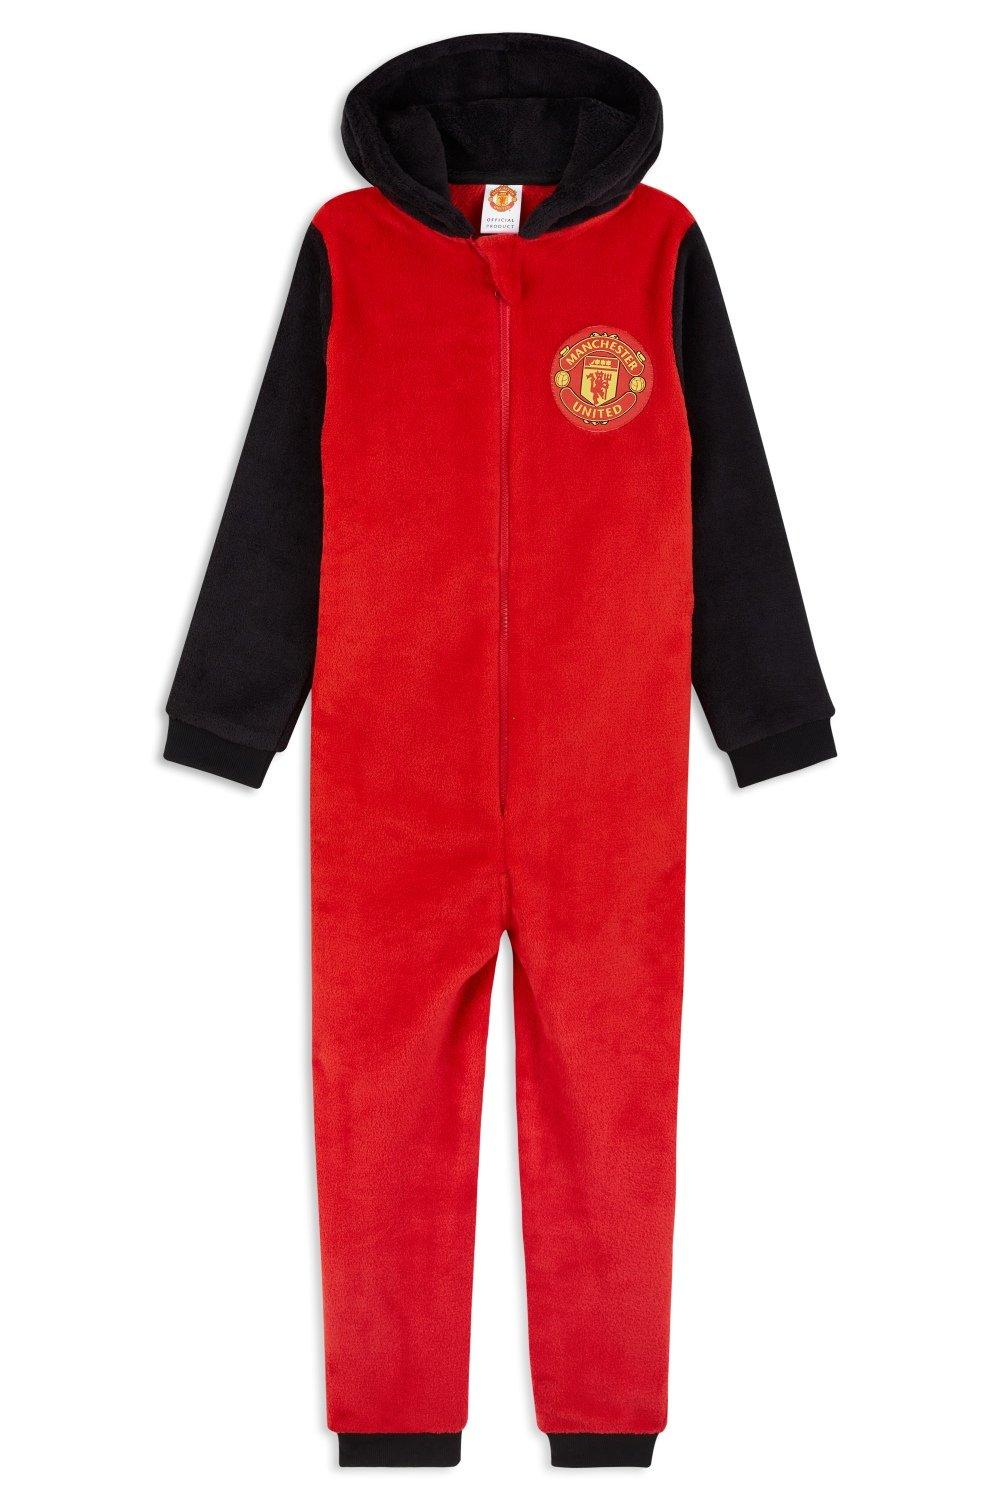 Комбинезон-пижама для дома Manchester United FC, красный футбольная форма детская манчестер юнайтед роналду 7 manchester united ronaldo бело черная